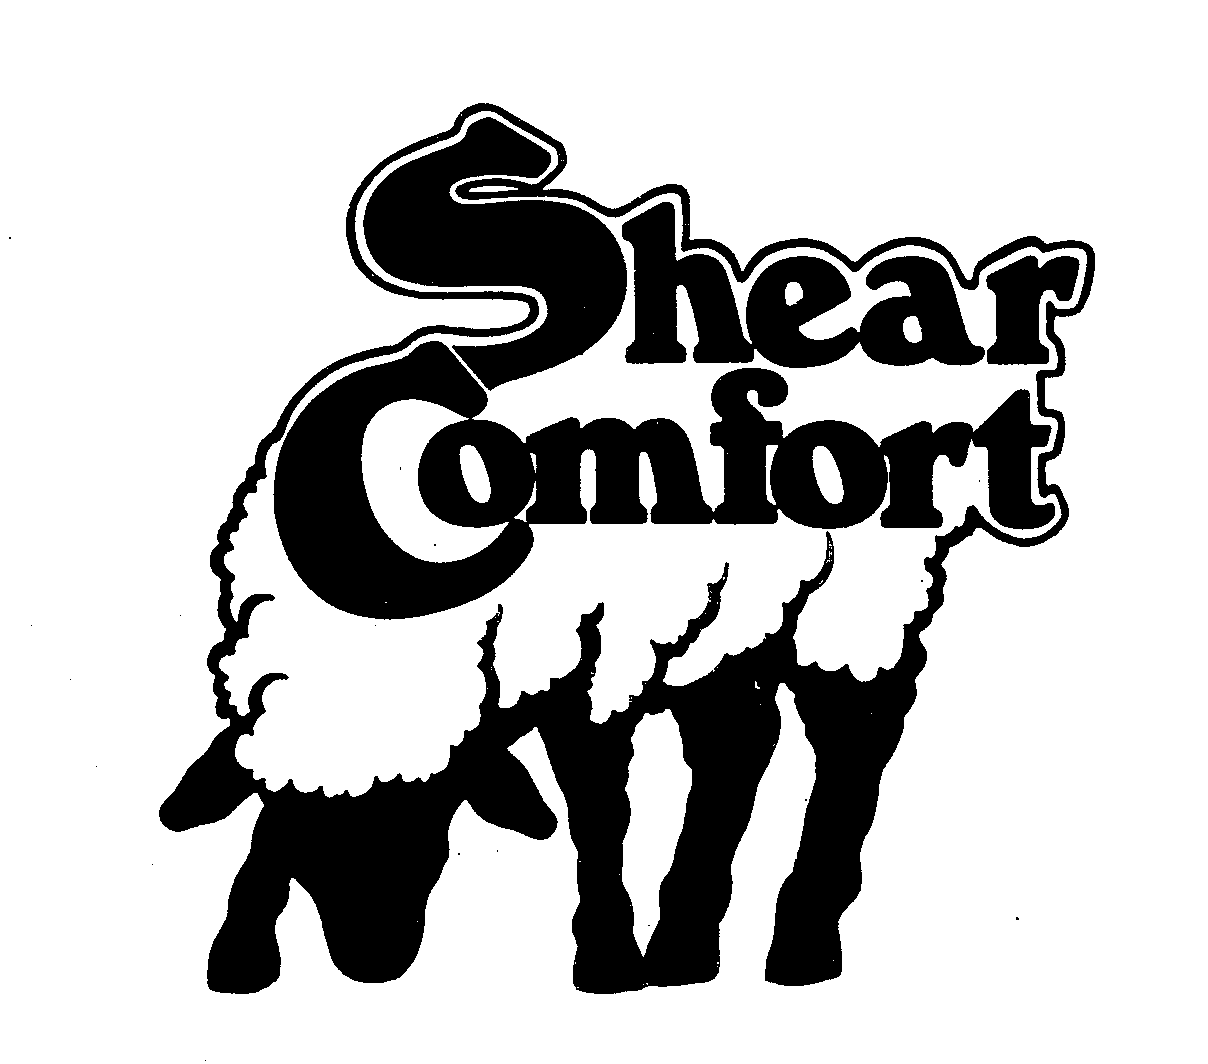 SHEAR COMFORT